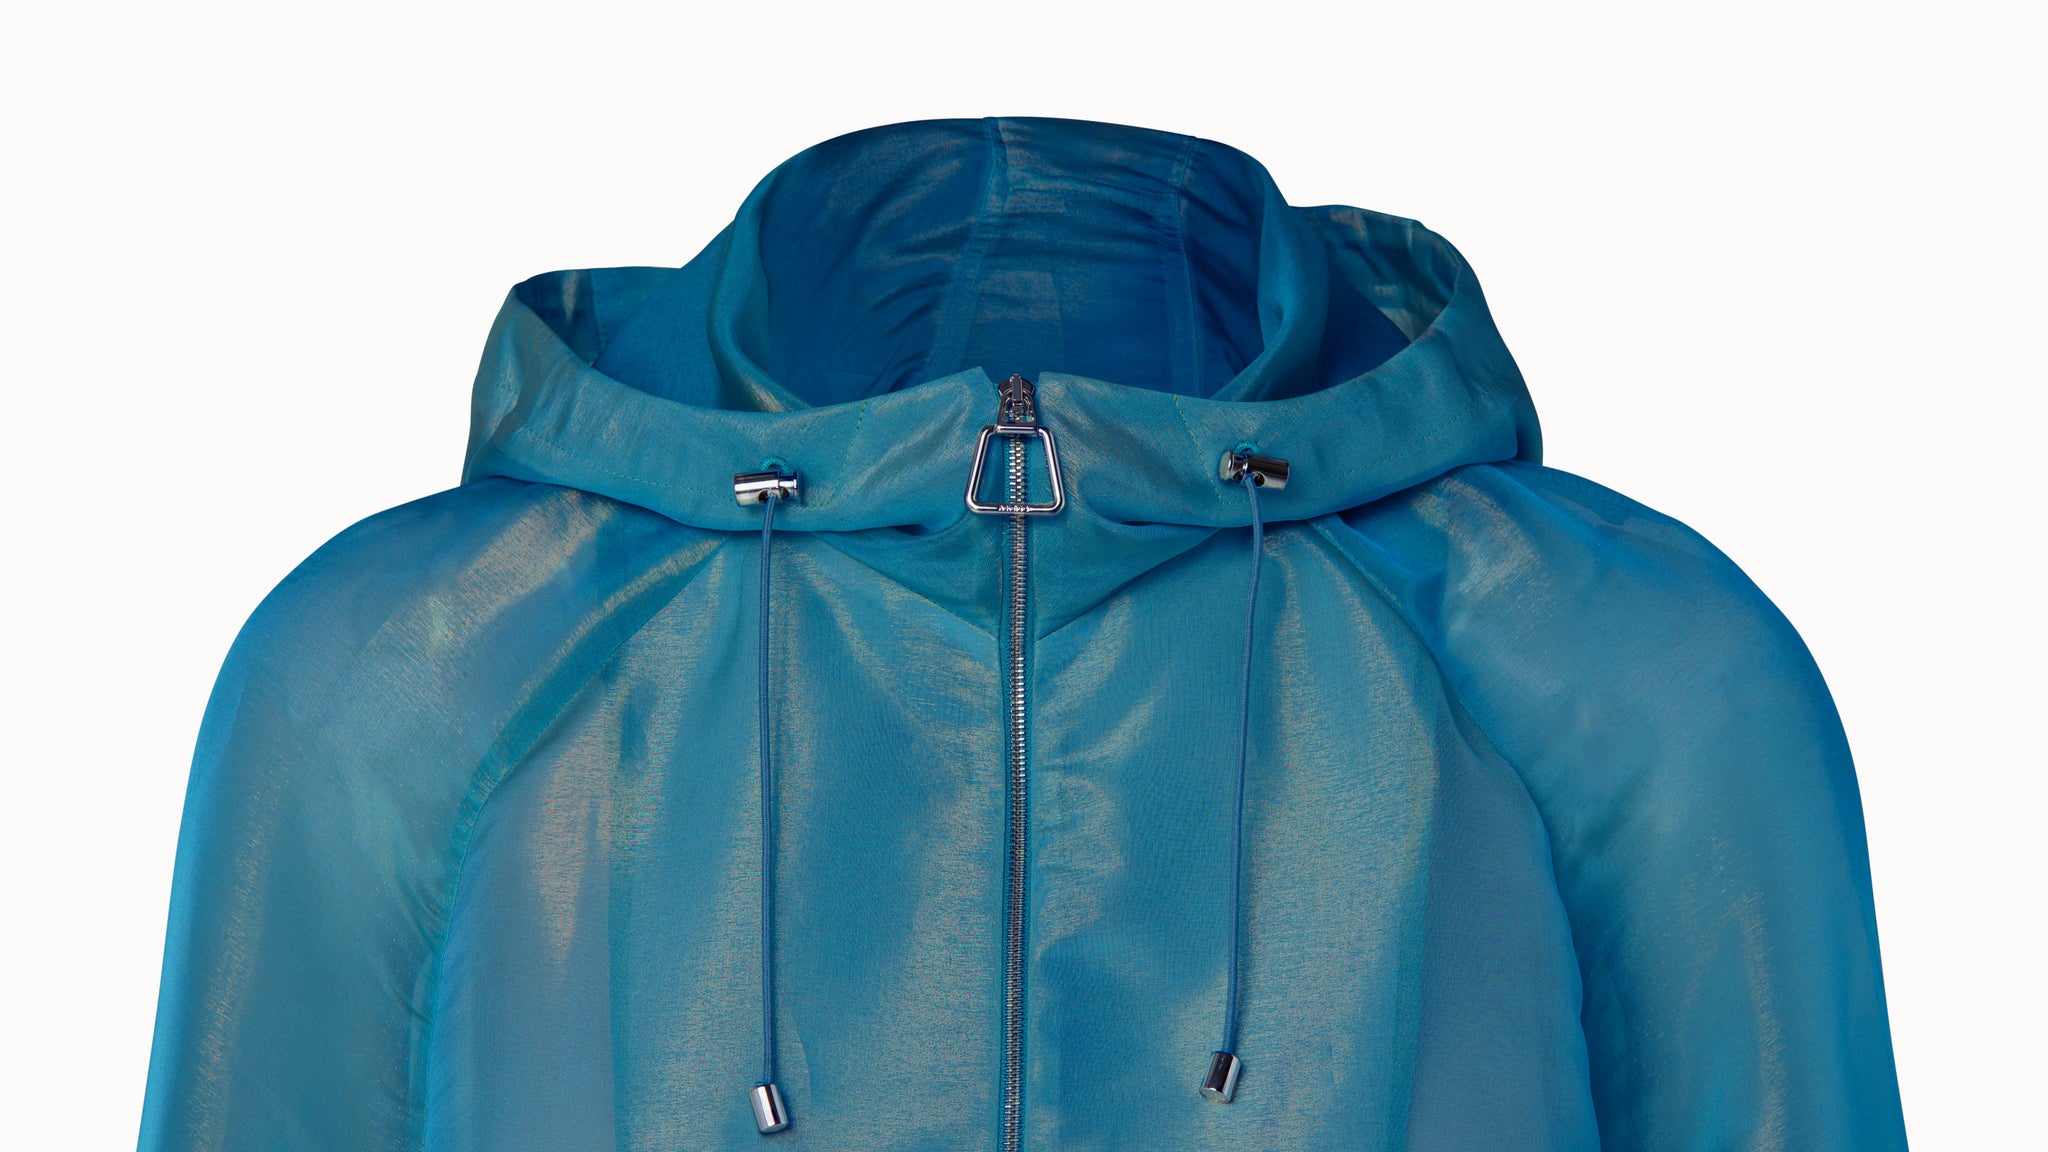 Silk Techno Iridescent Organza Voluminous Blouson Jacket